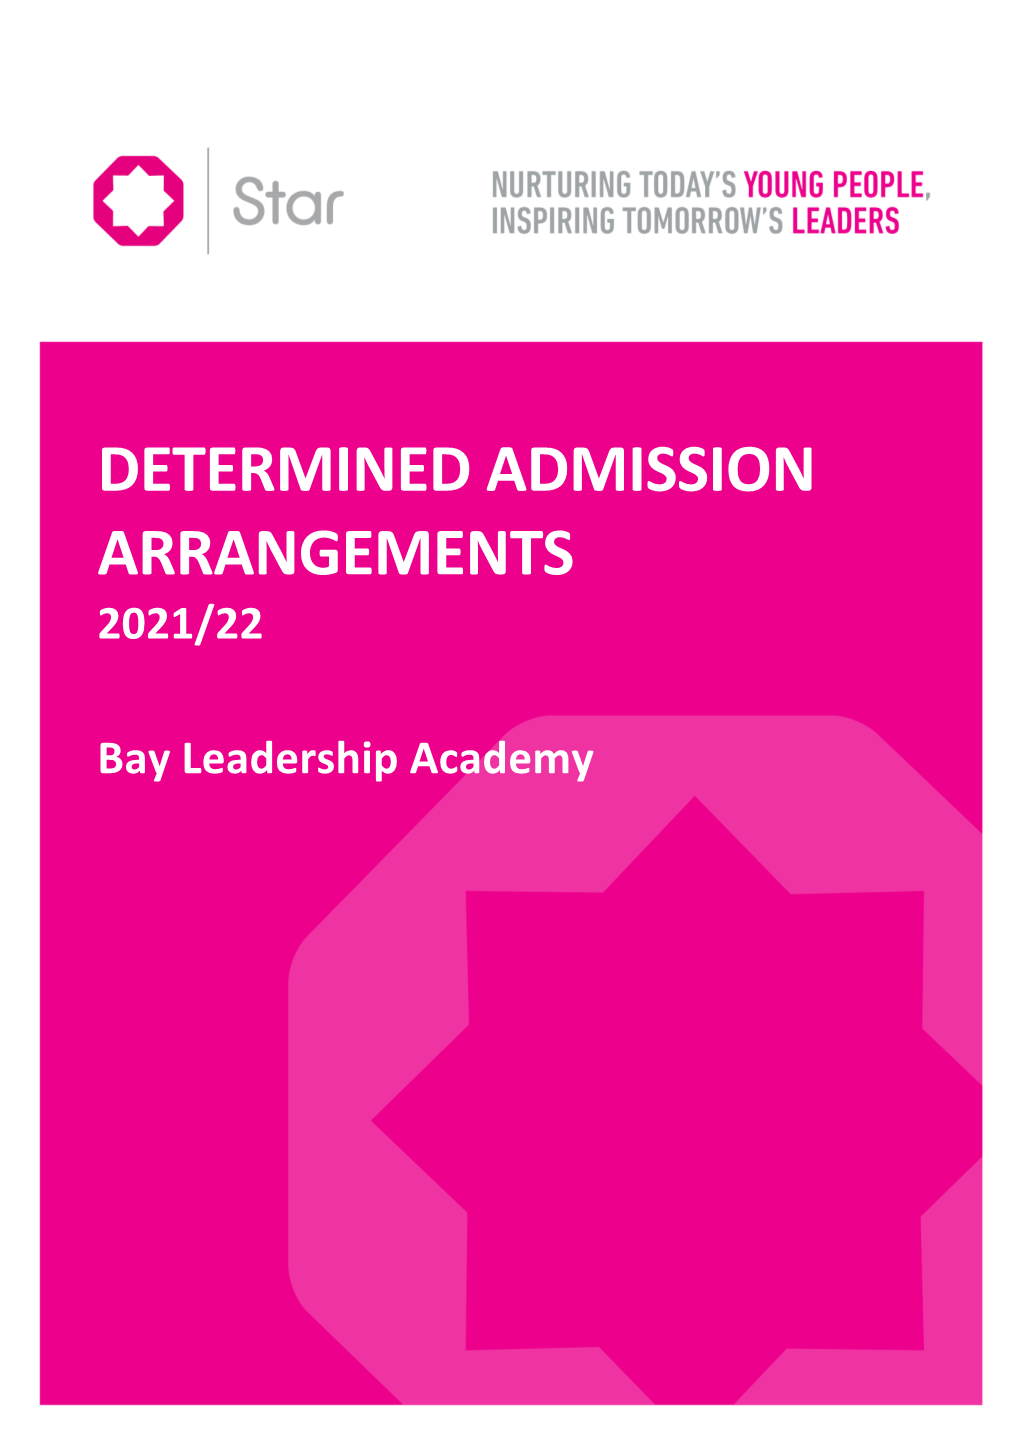 Bay Leadership Academy 3 March 2020.Pdf